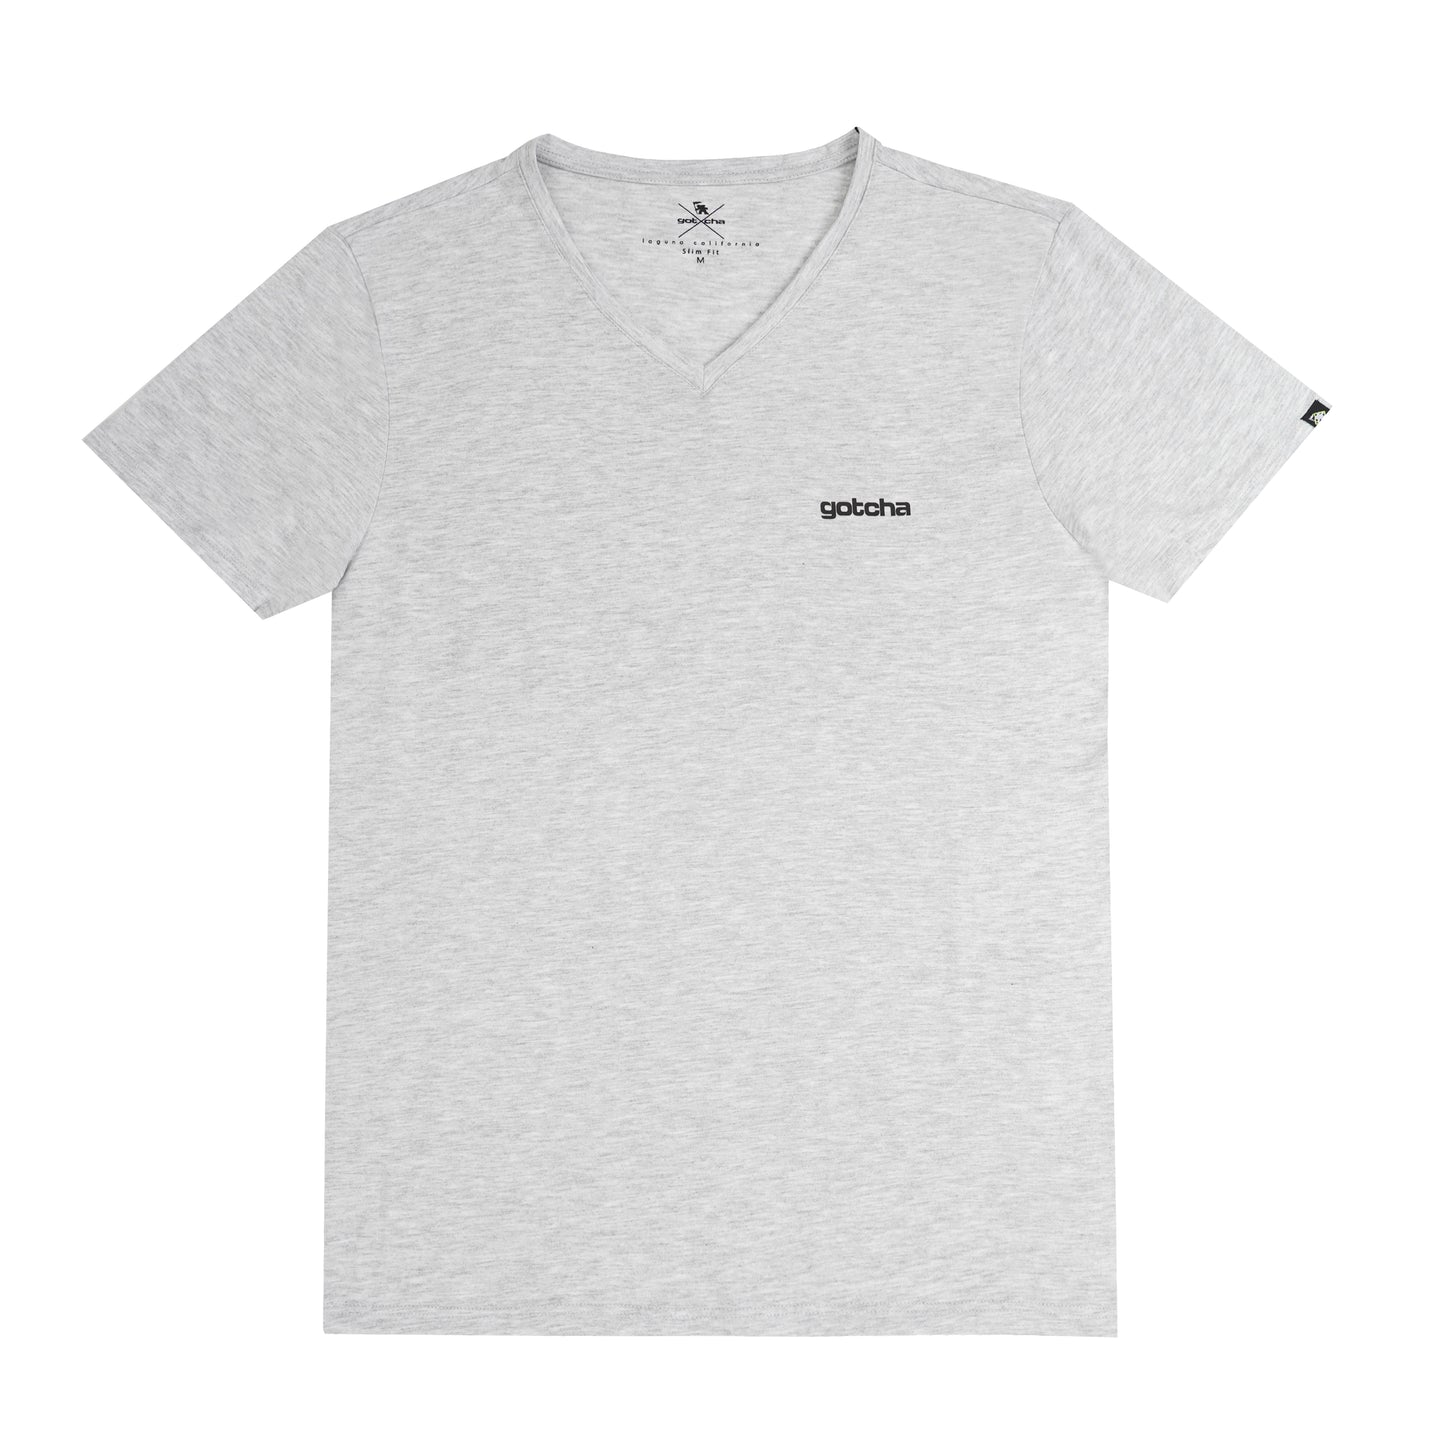 MartinSS22 T-shirt